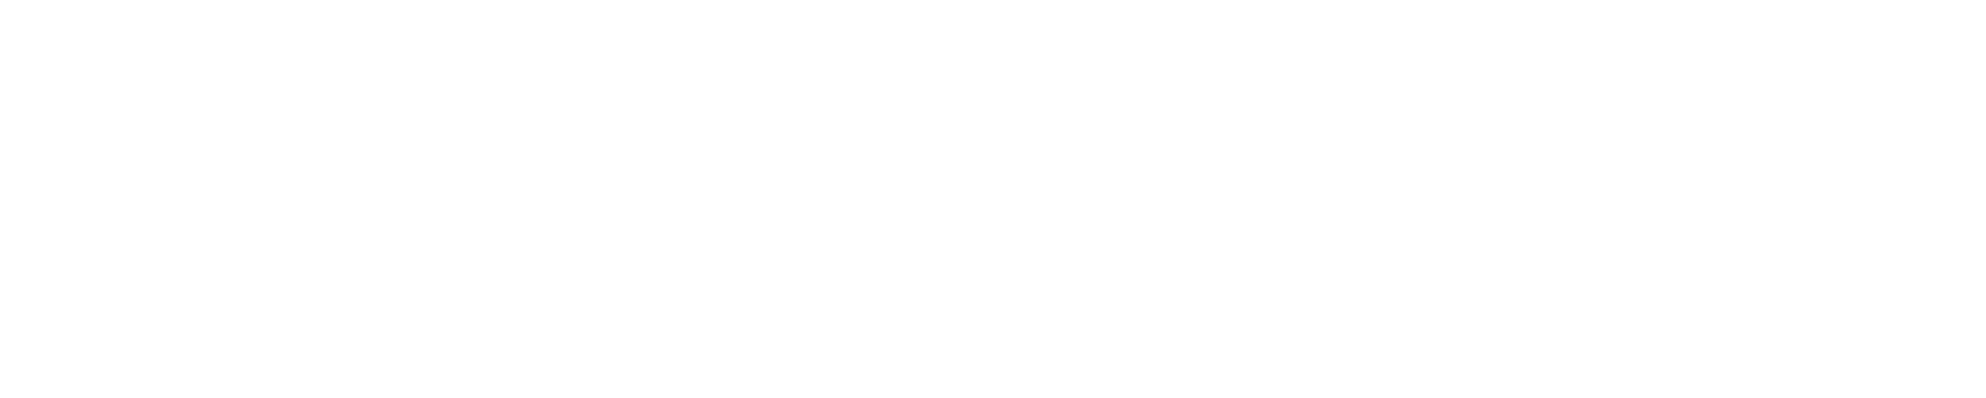 Taiwan AI Academy